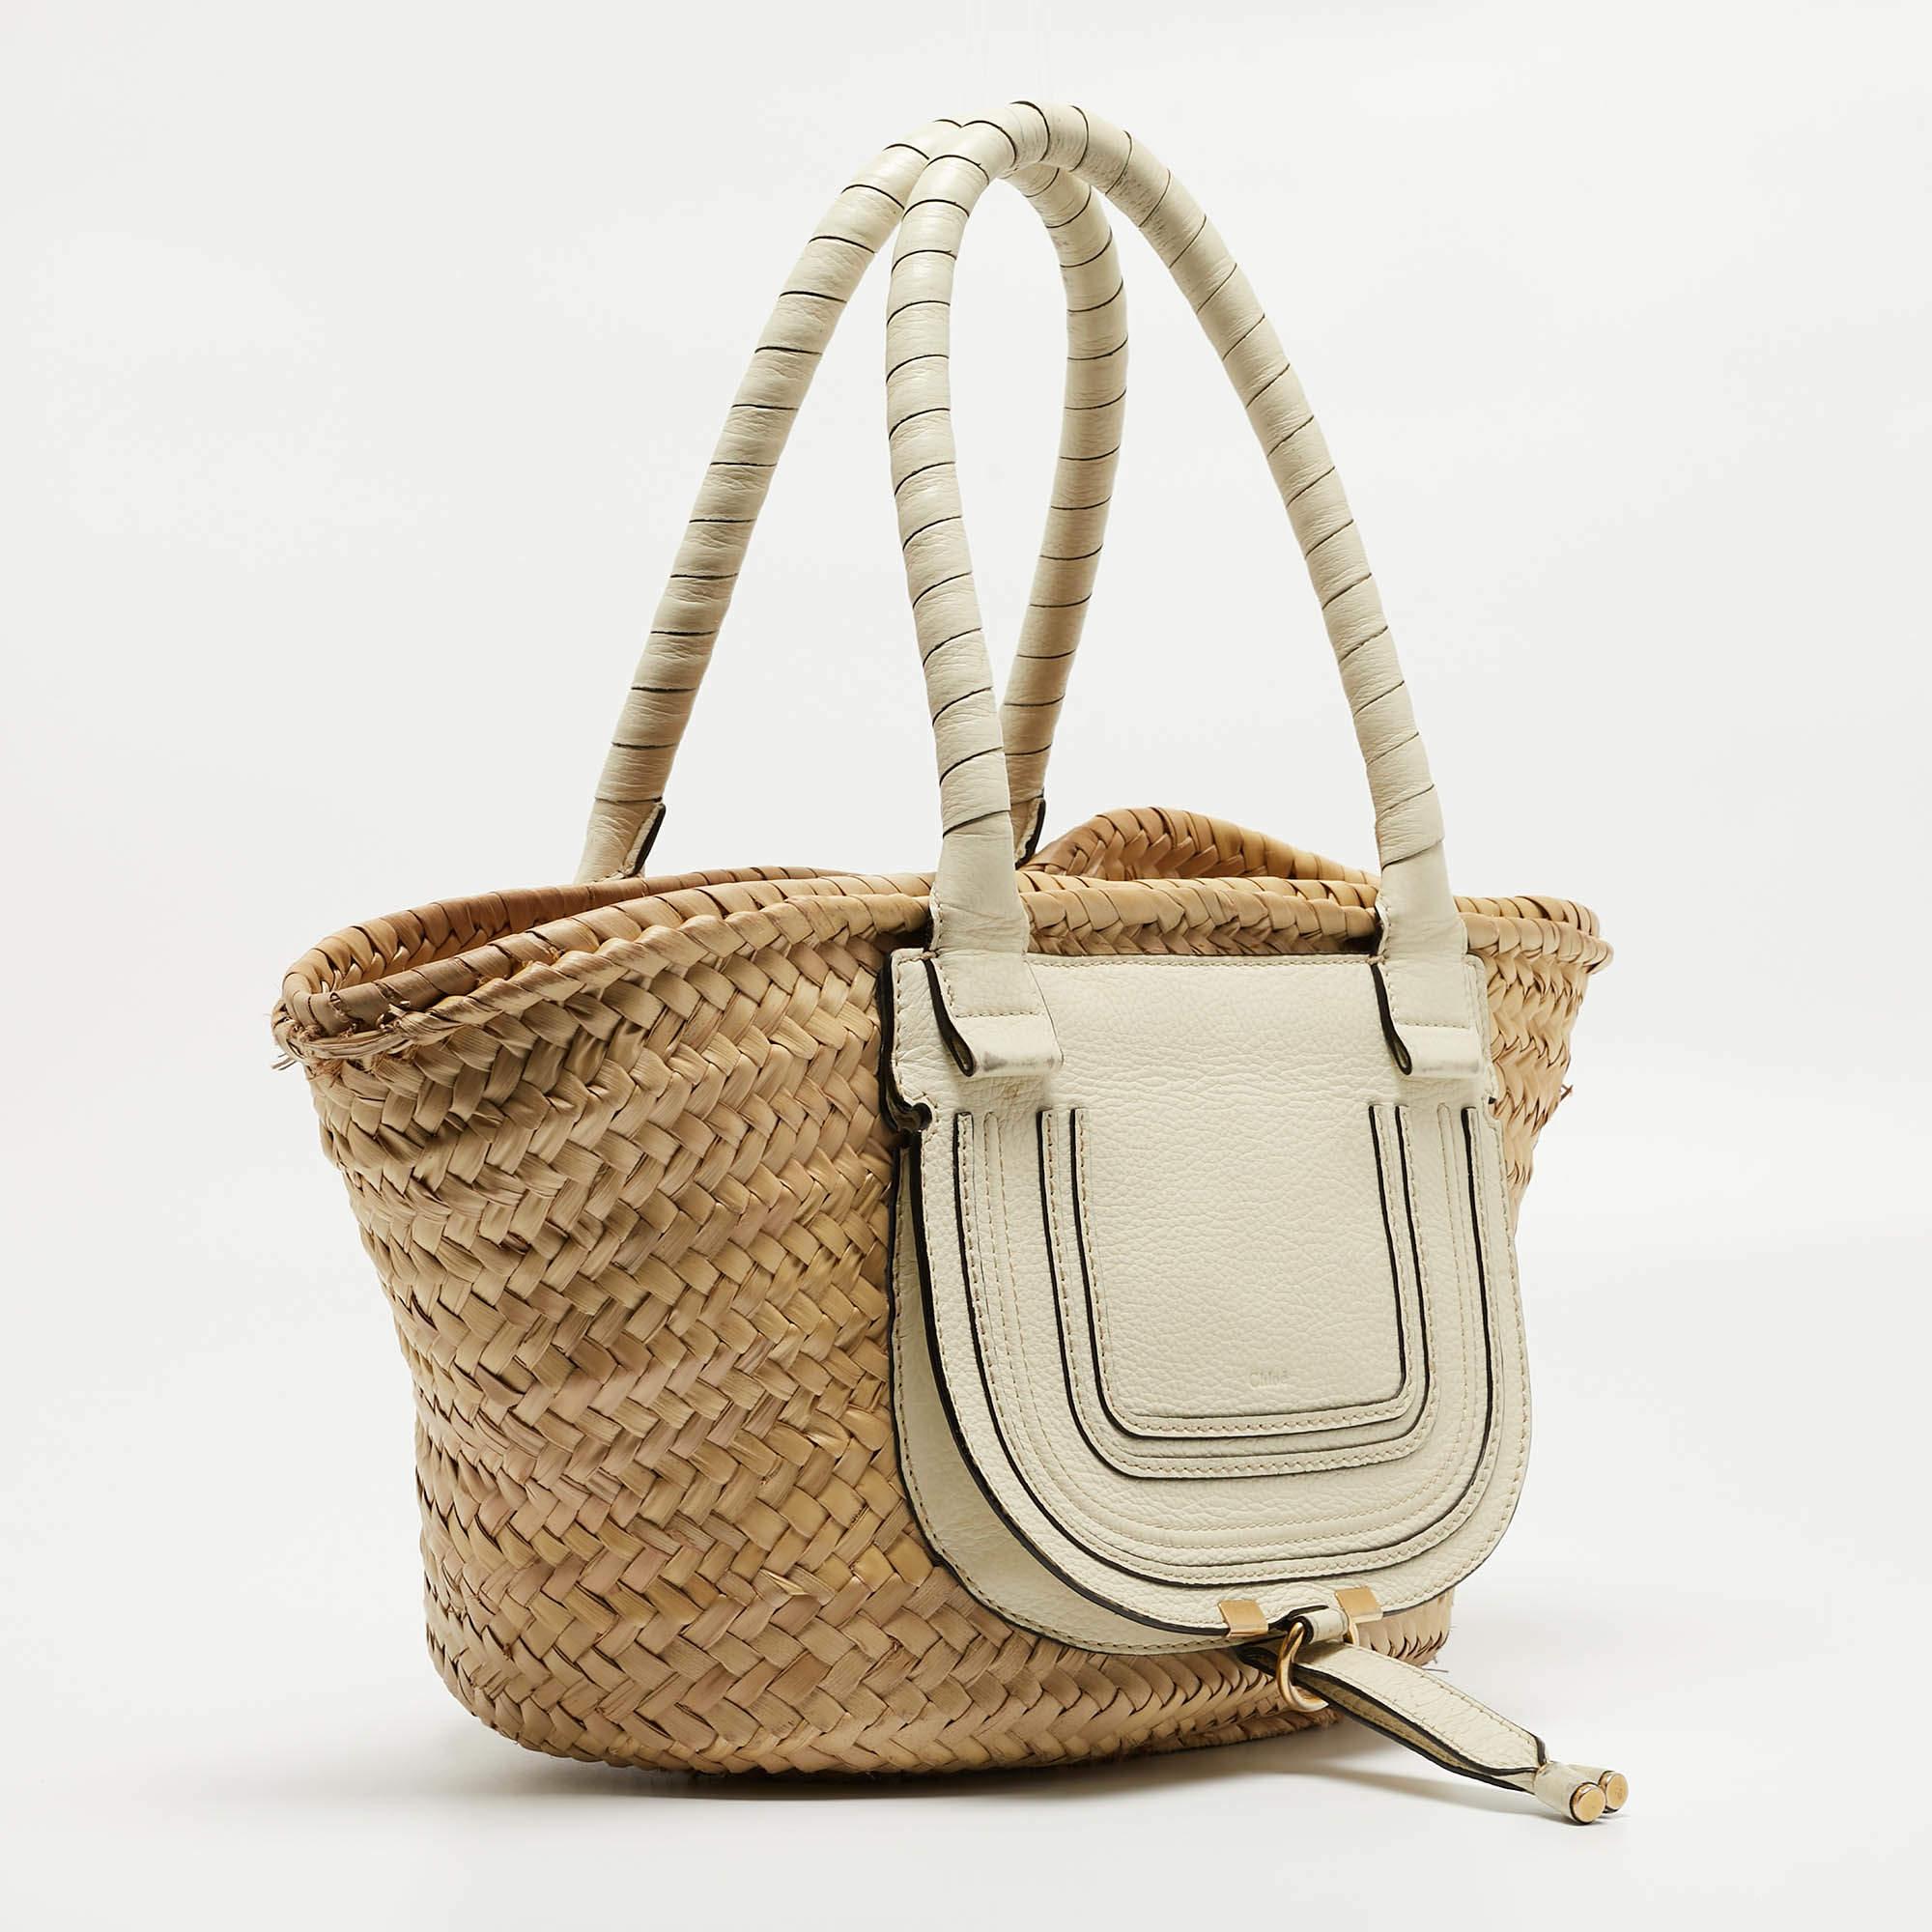 Chloe Beige/Cream Straw and Leather Medium Marcie Basket Bag 5